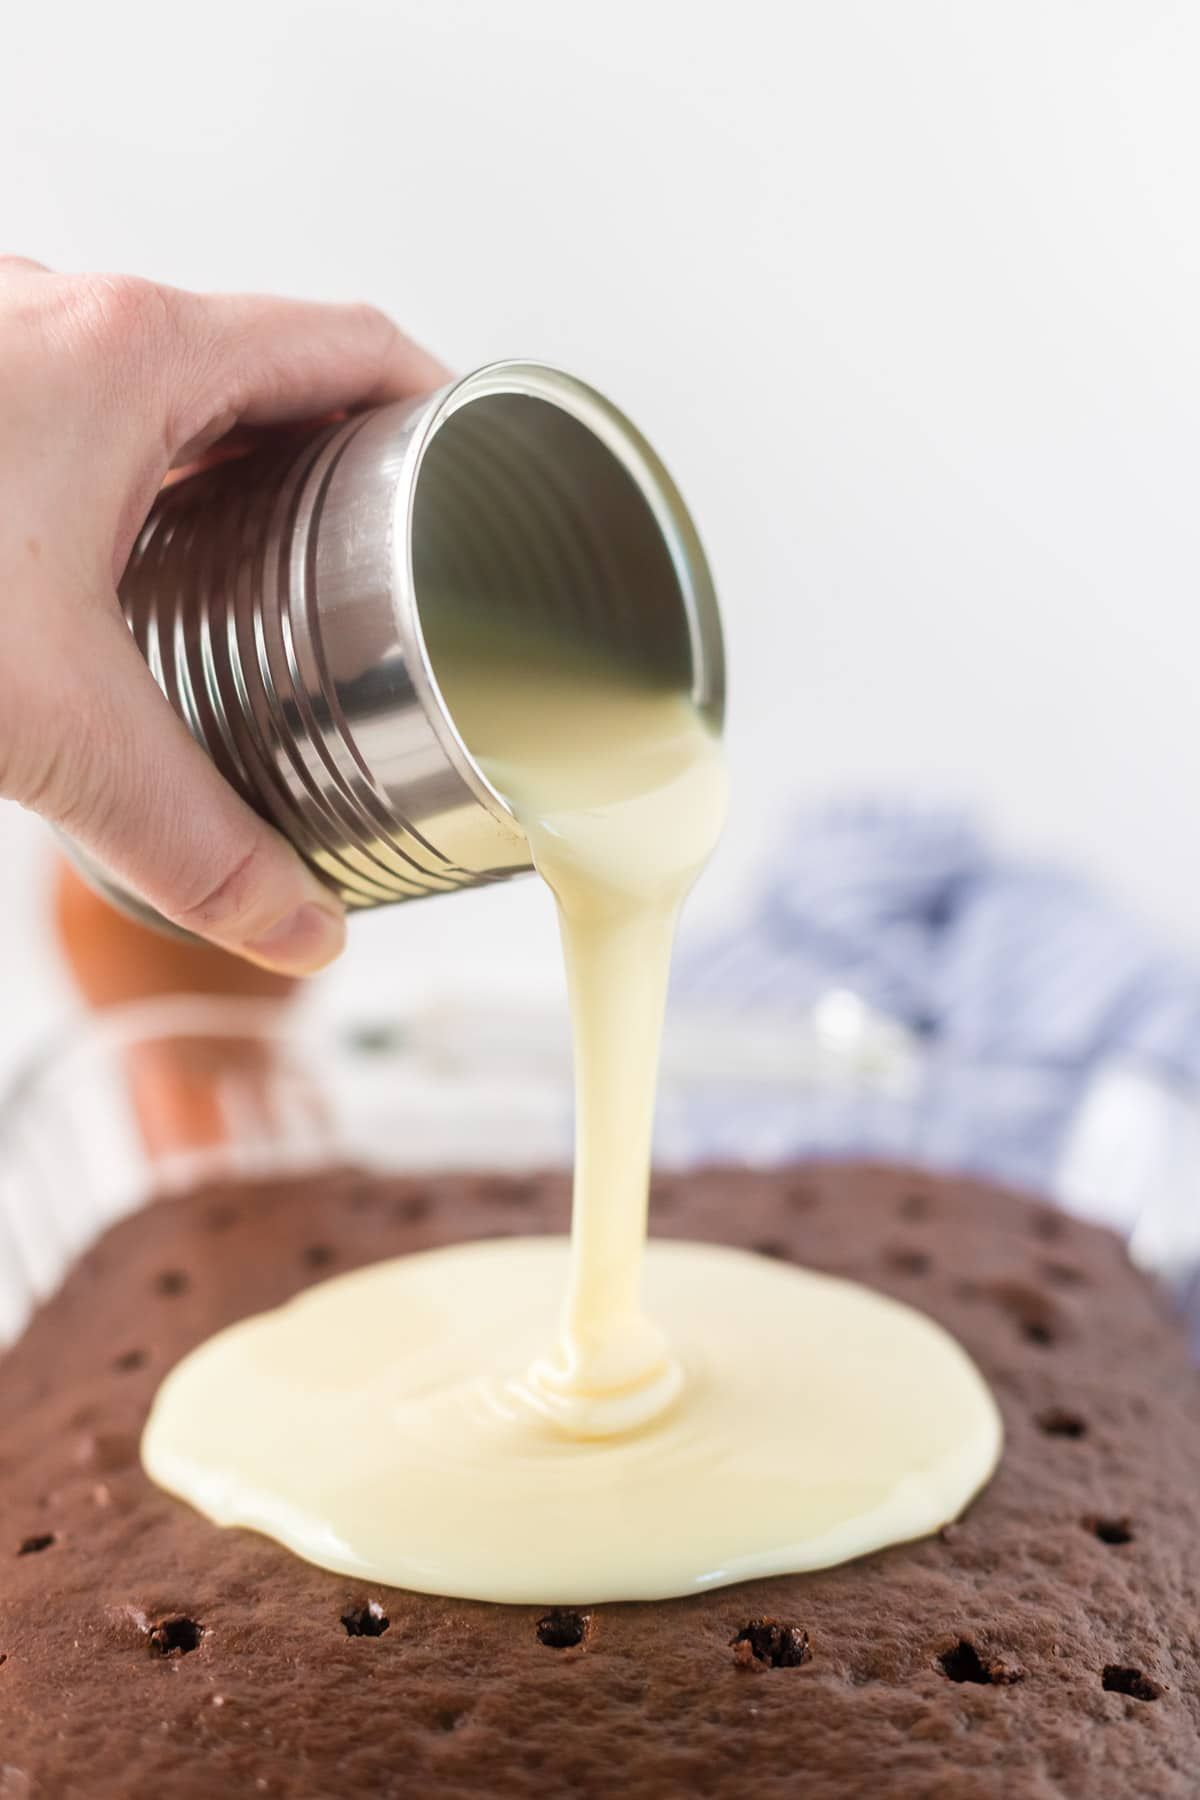 Verter la leche condensada sobre el pastel de chocolate